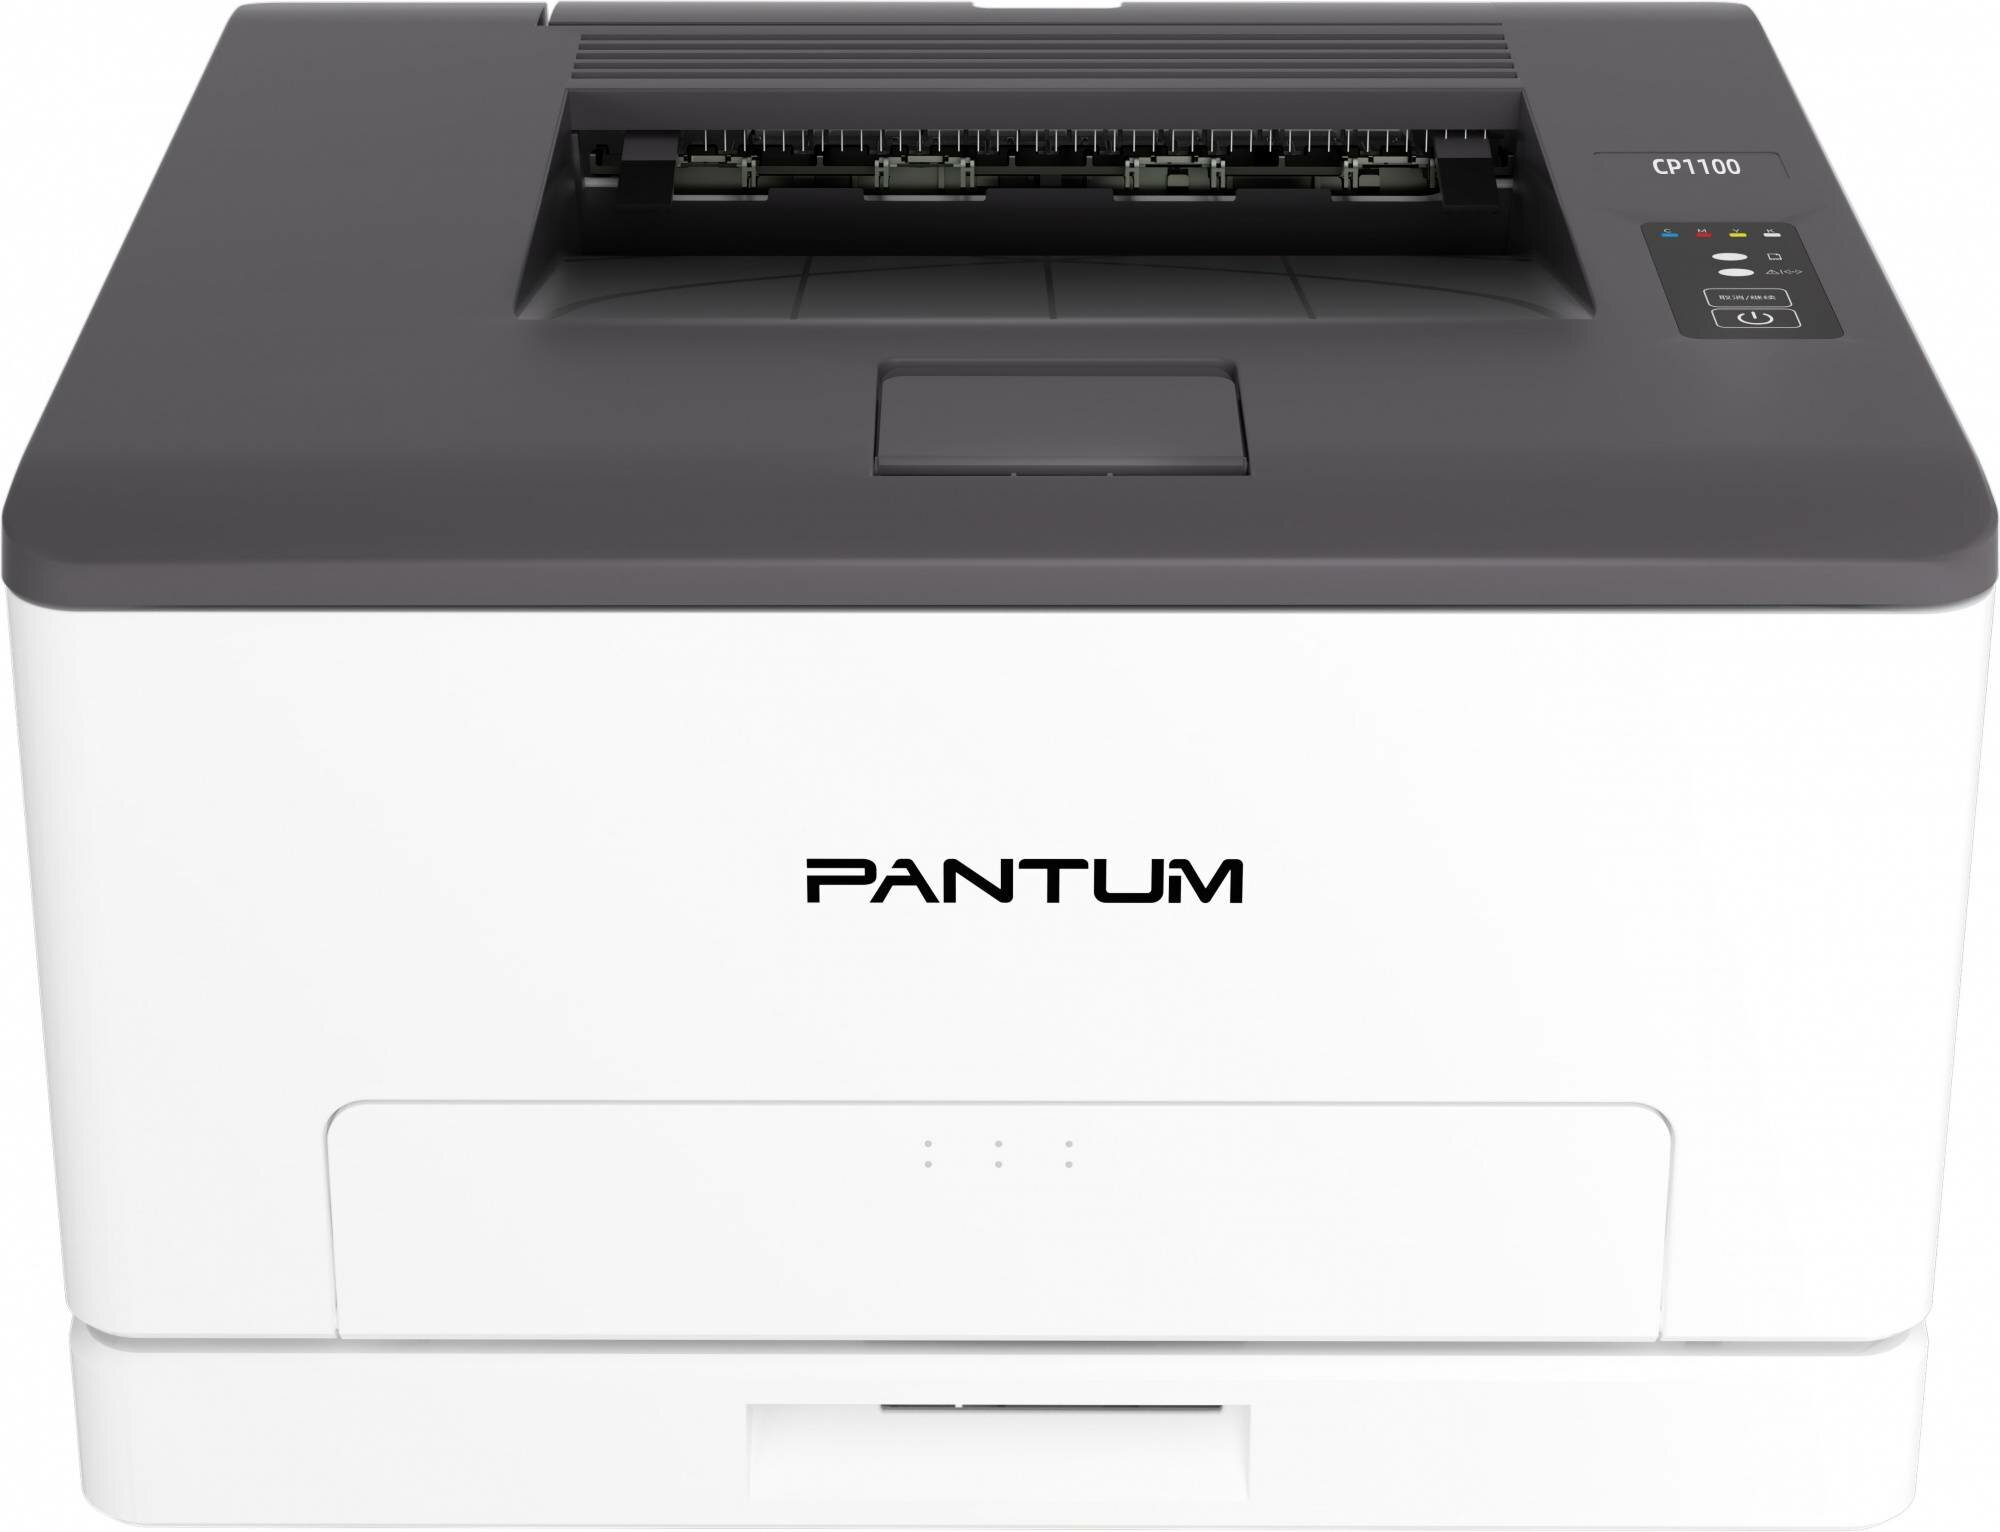 Принтер Pantum CP1100 белый